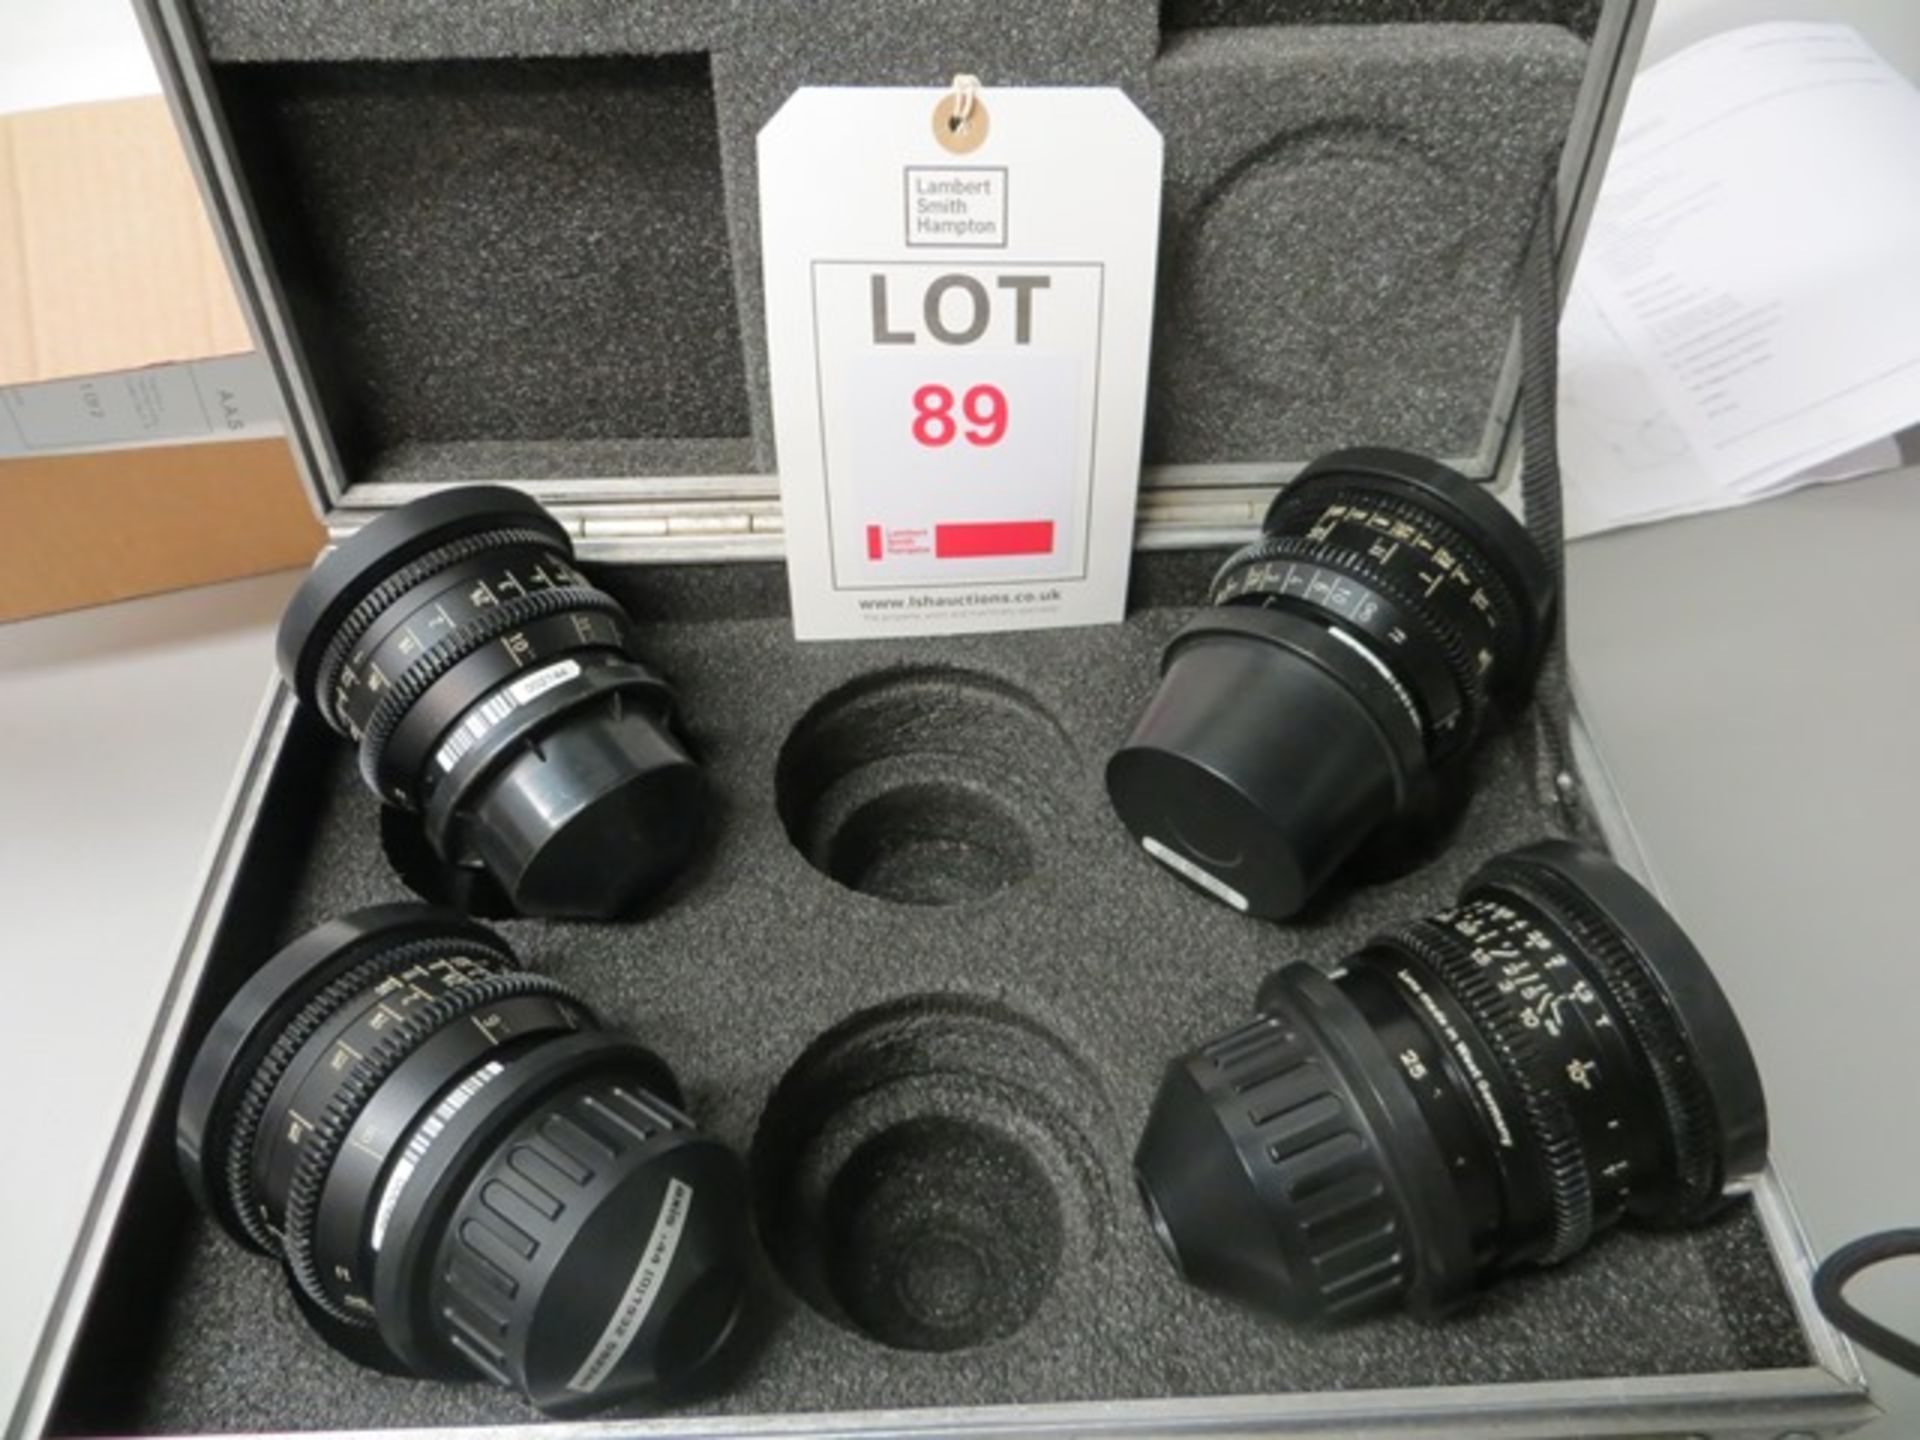 Arriflex Super 16 T 1.3 lens set comprising 9.5mm s/n 7492122, 12mm s/n 7492232, 16mm s/n